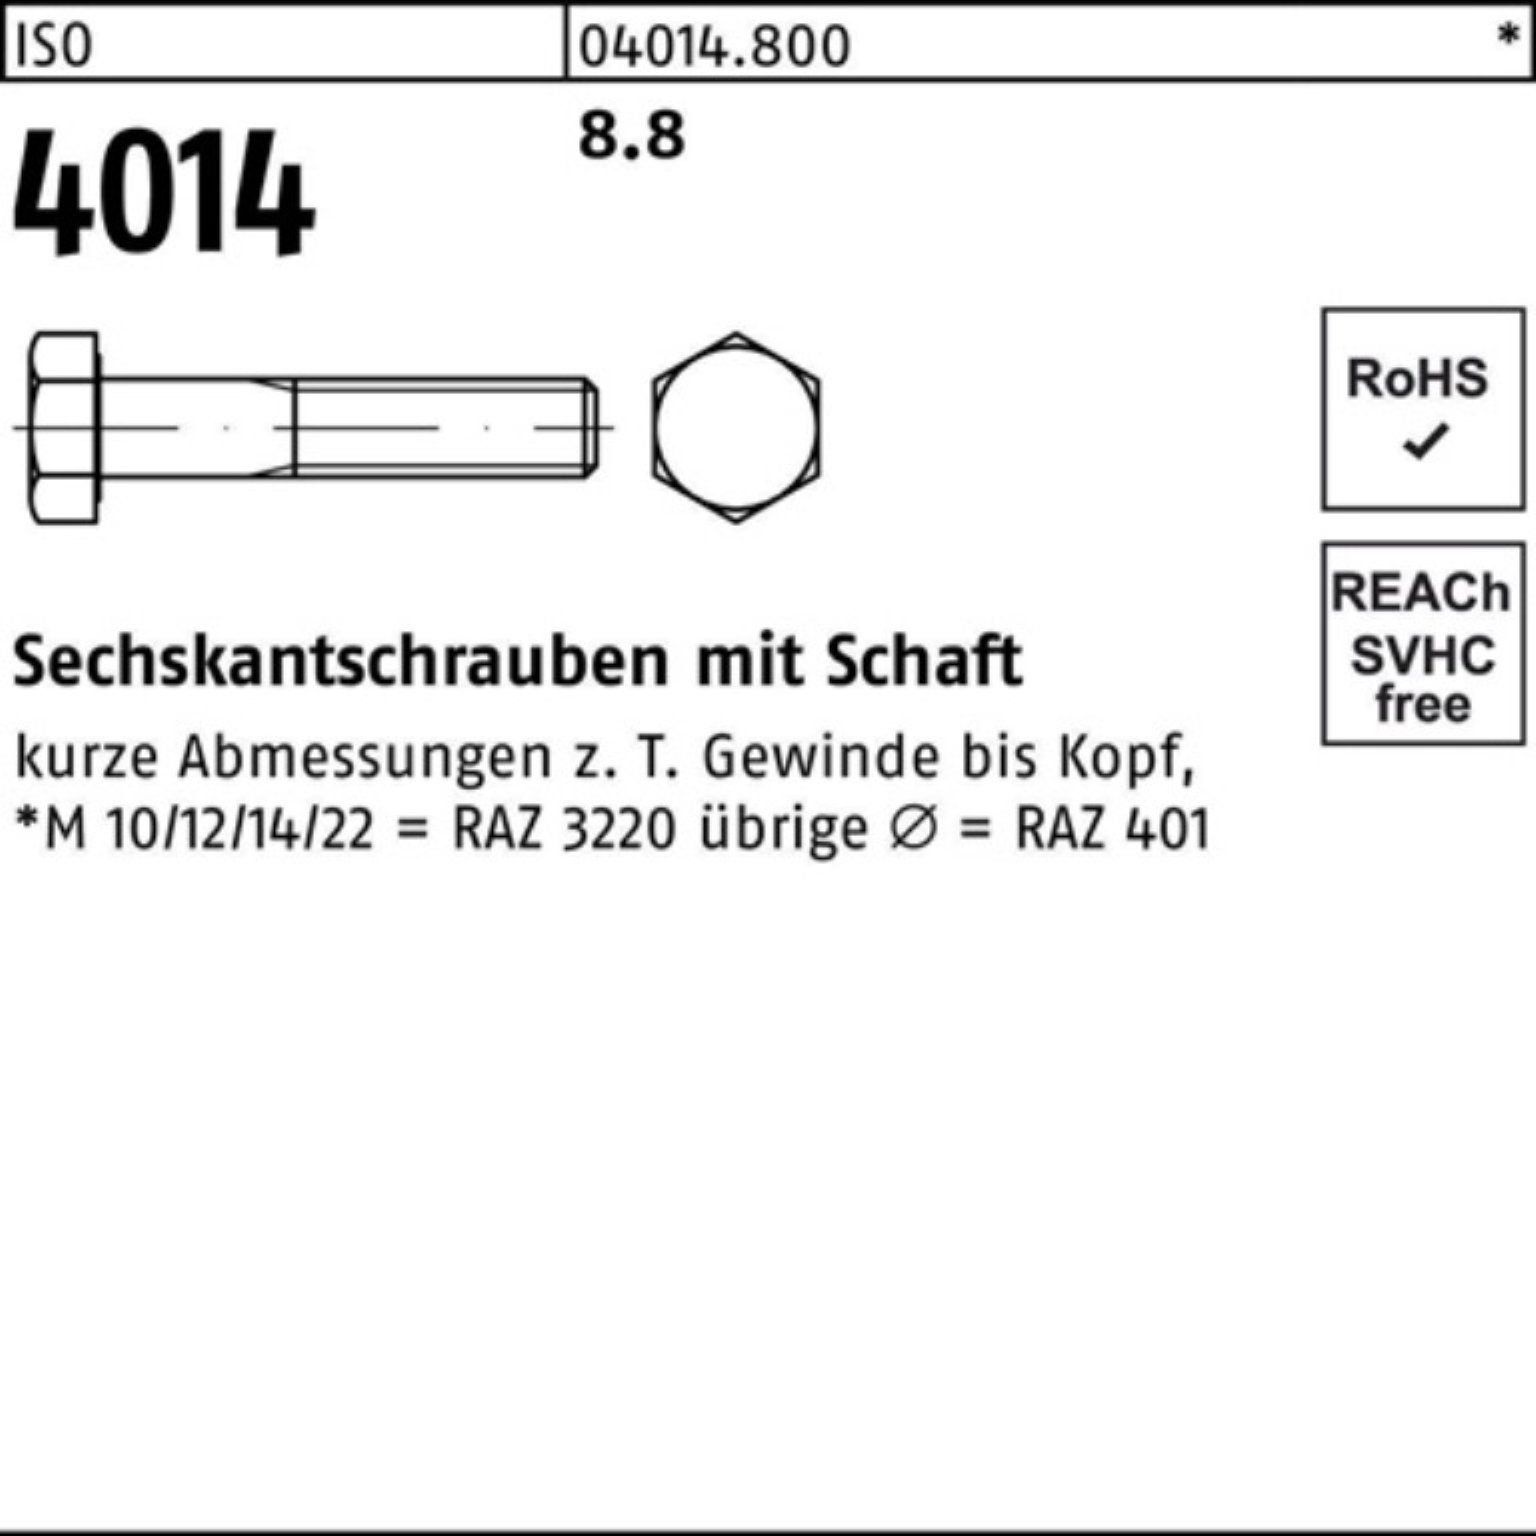 260 Sechskantschraube 100er Stück ISO Bufab 8.8 Sechskantschraube Pack M39x 1 ISO 4014 Schaft